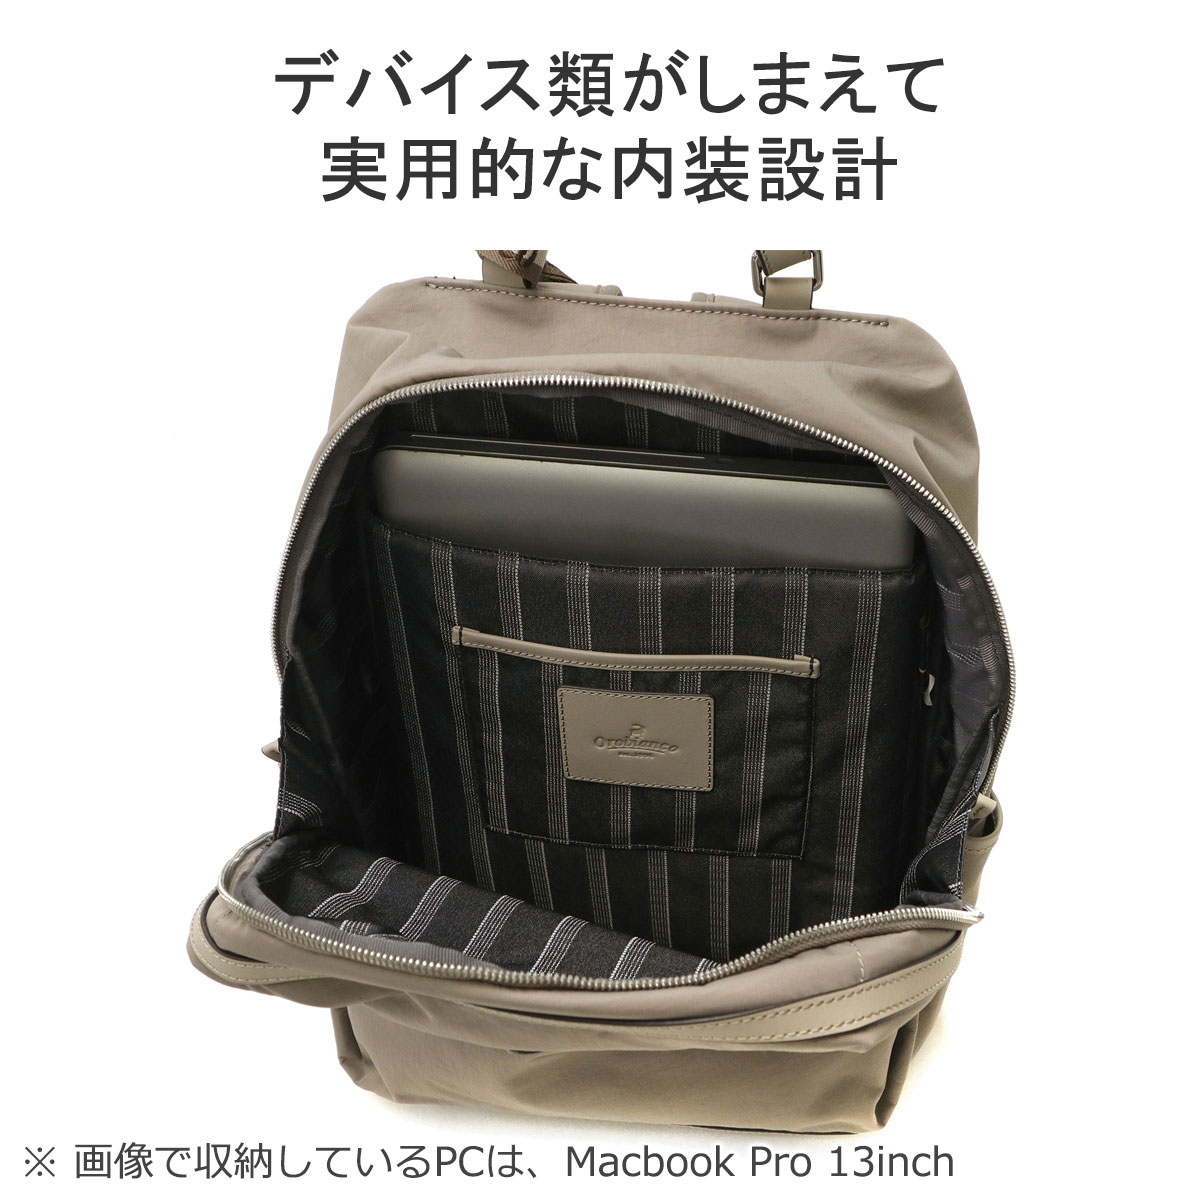 日本正規品 オロビアンコ リュック メンズ レディース ビジネスバッグ 